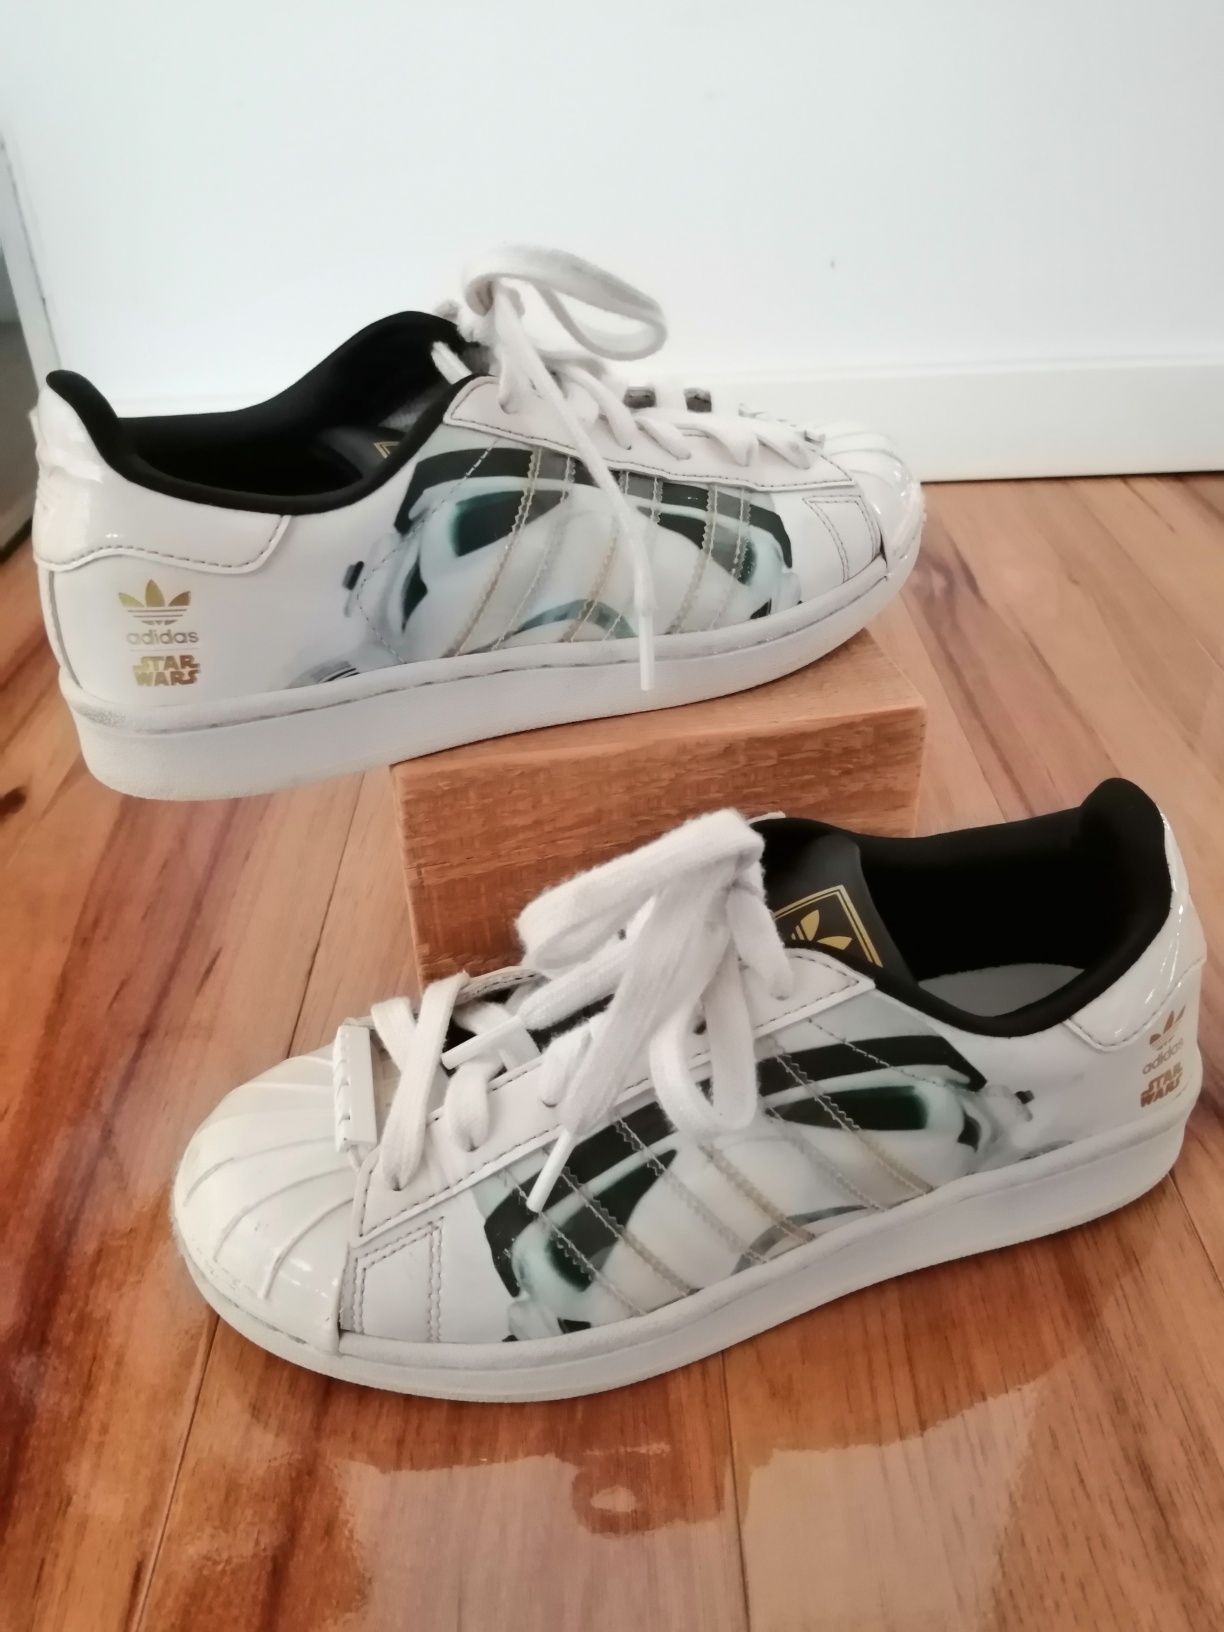 Białe buty sportowe adidas Superstar Star Wars, roz36i 2/3